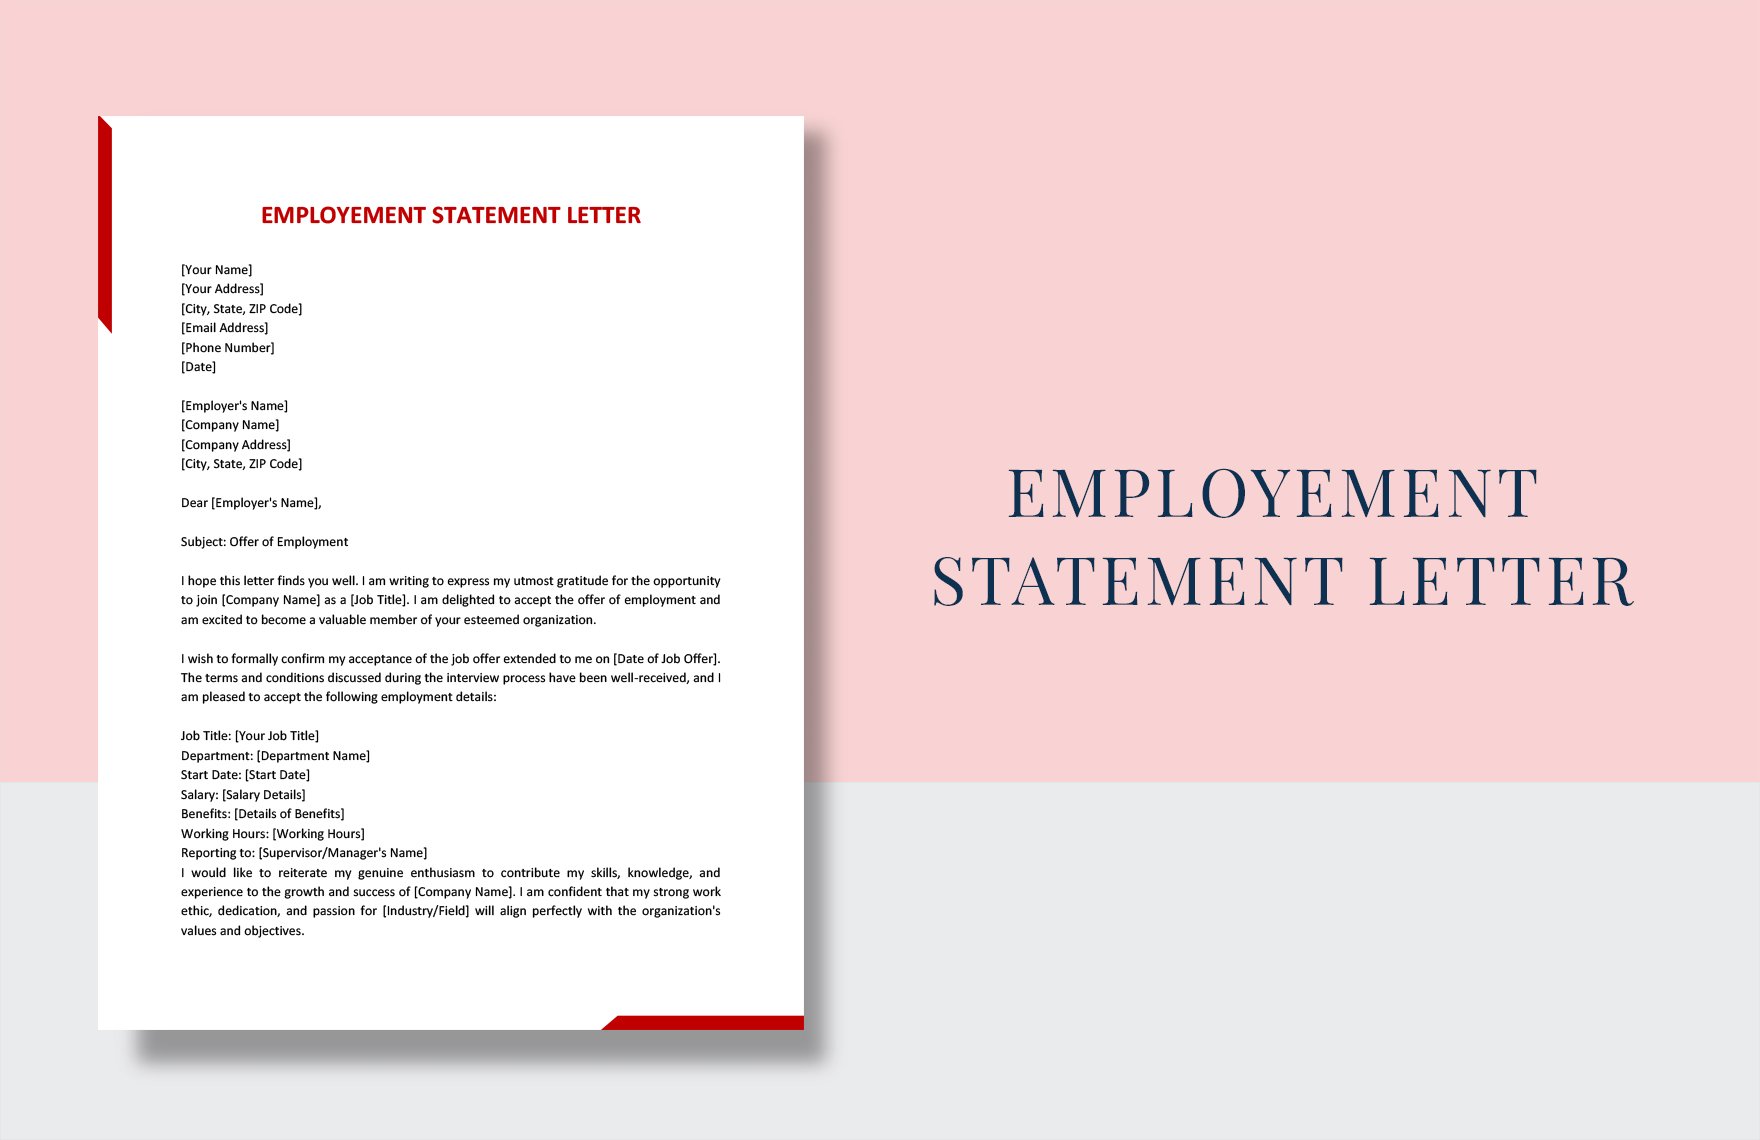 Employment Statement Letter